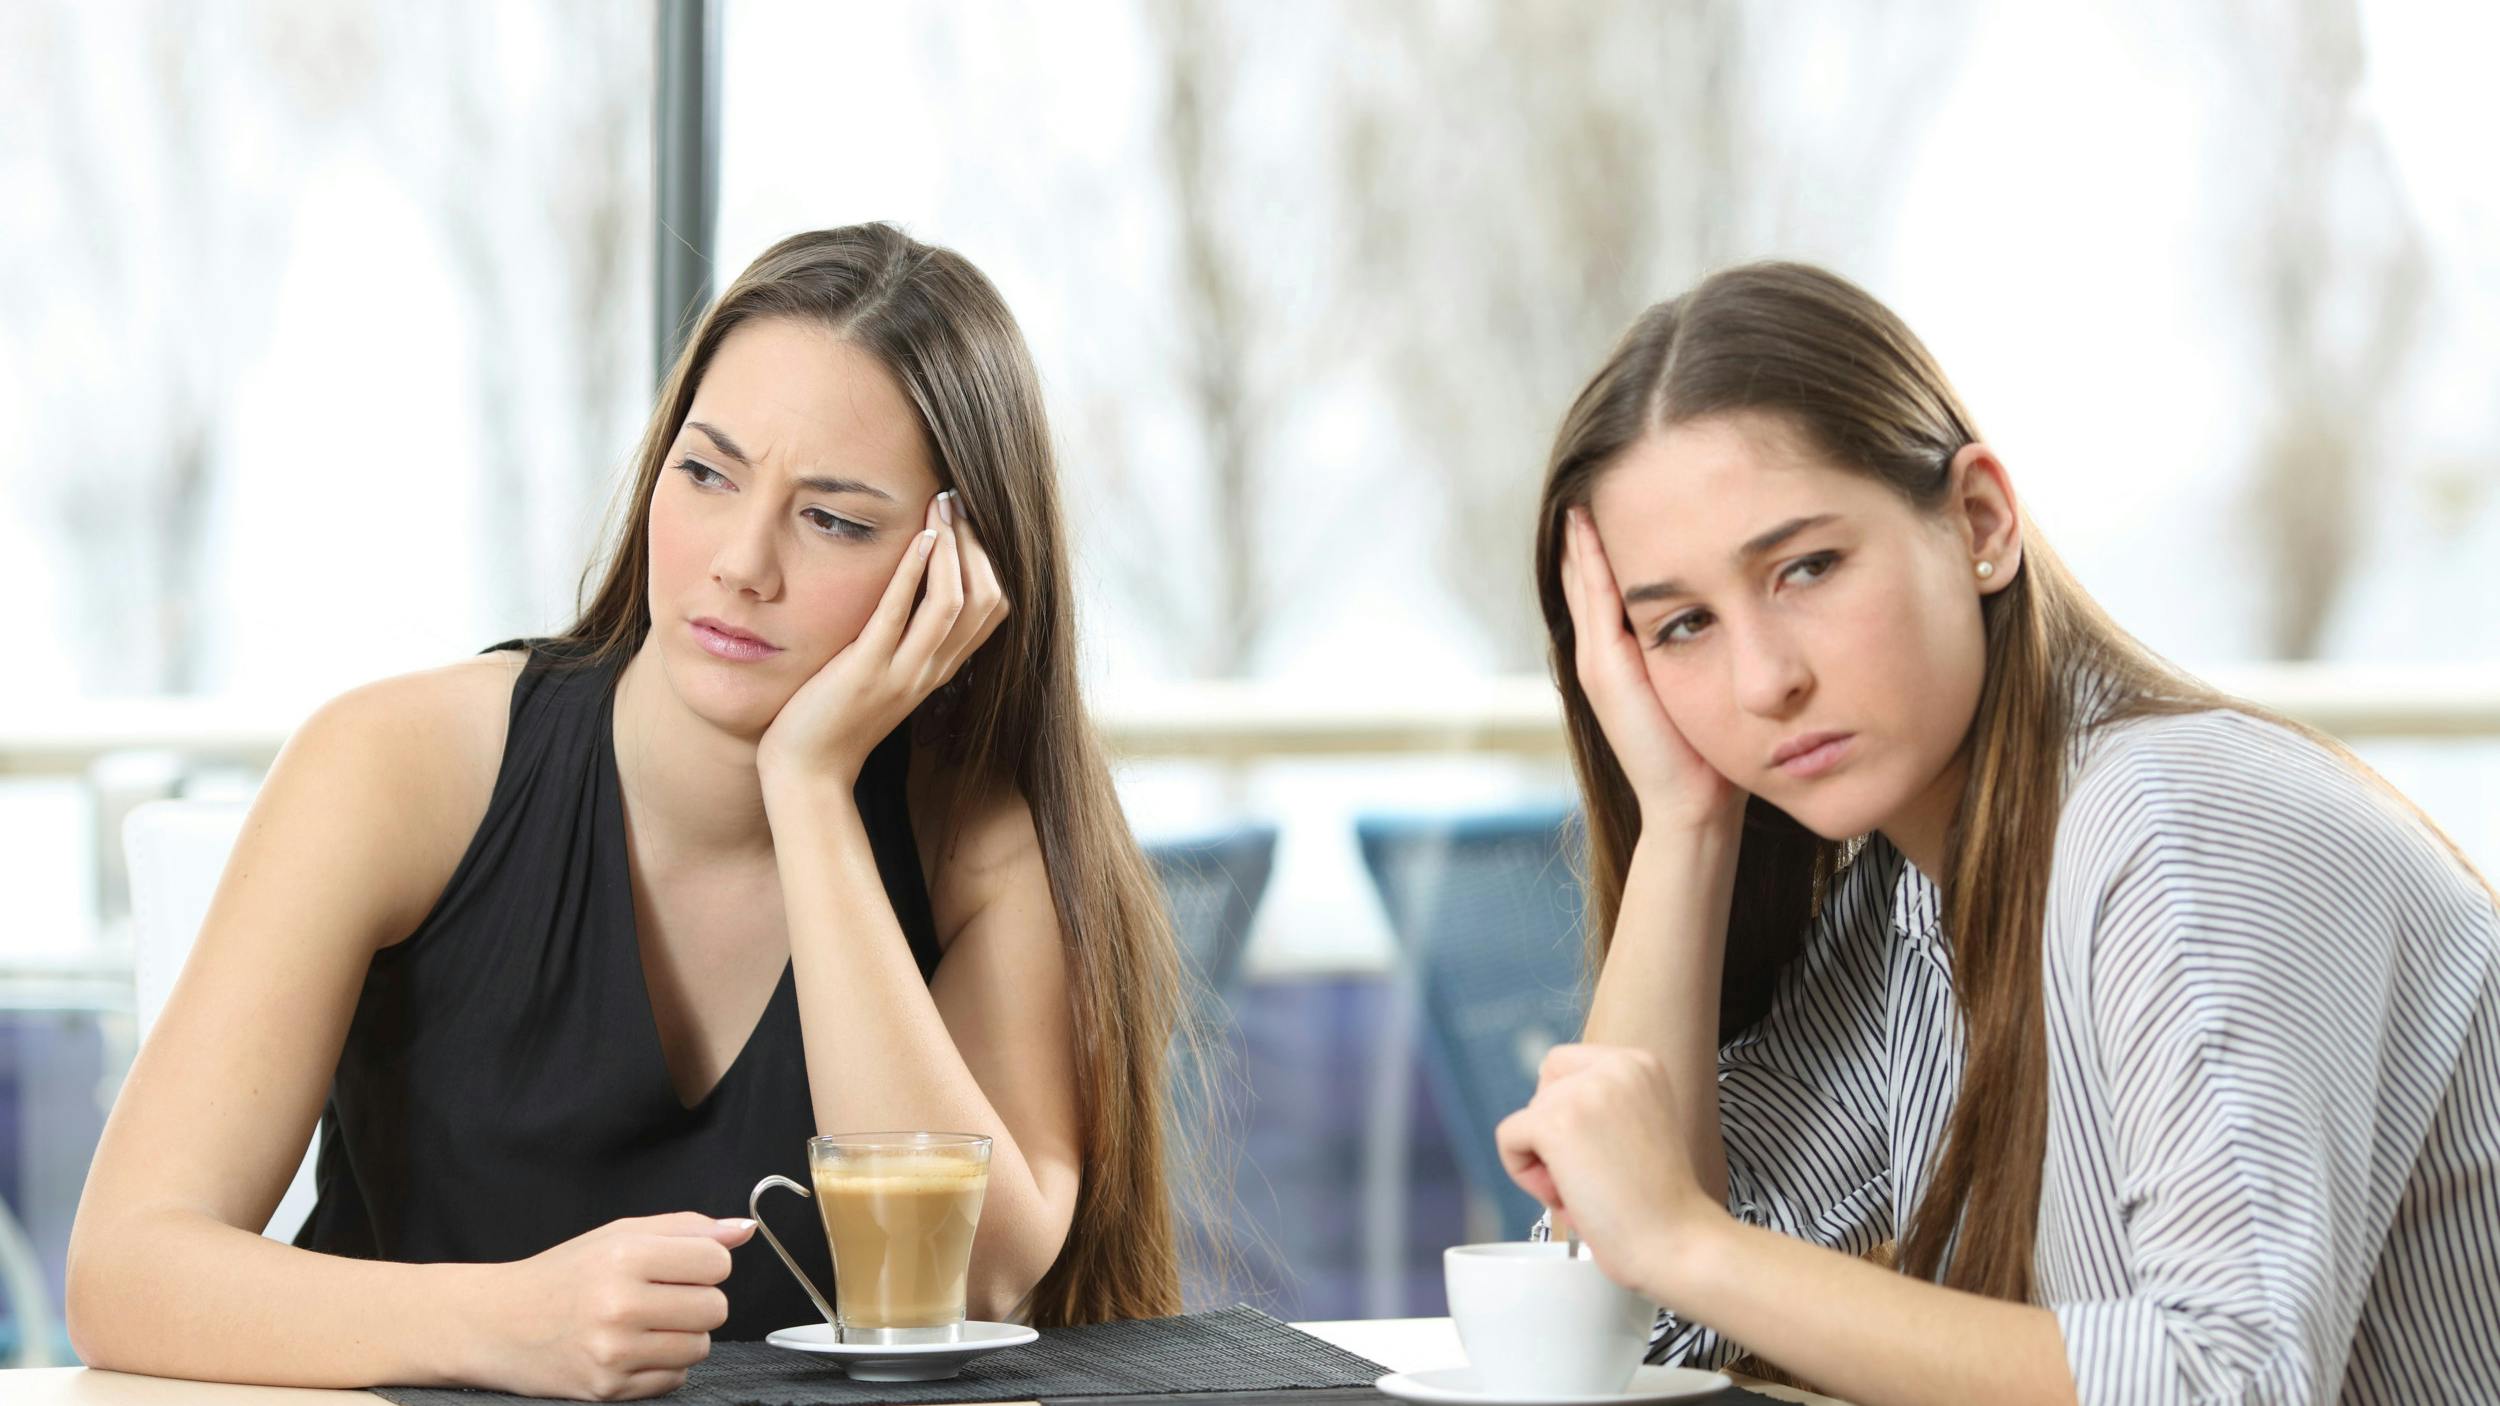 To kvinder sidder med hver sin kop kaffe, mens de ser hver sin vej med et trist udtryk.